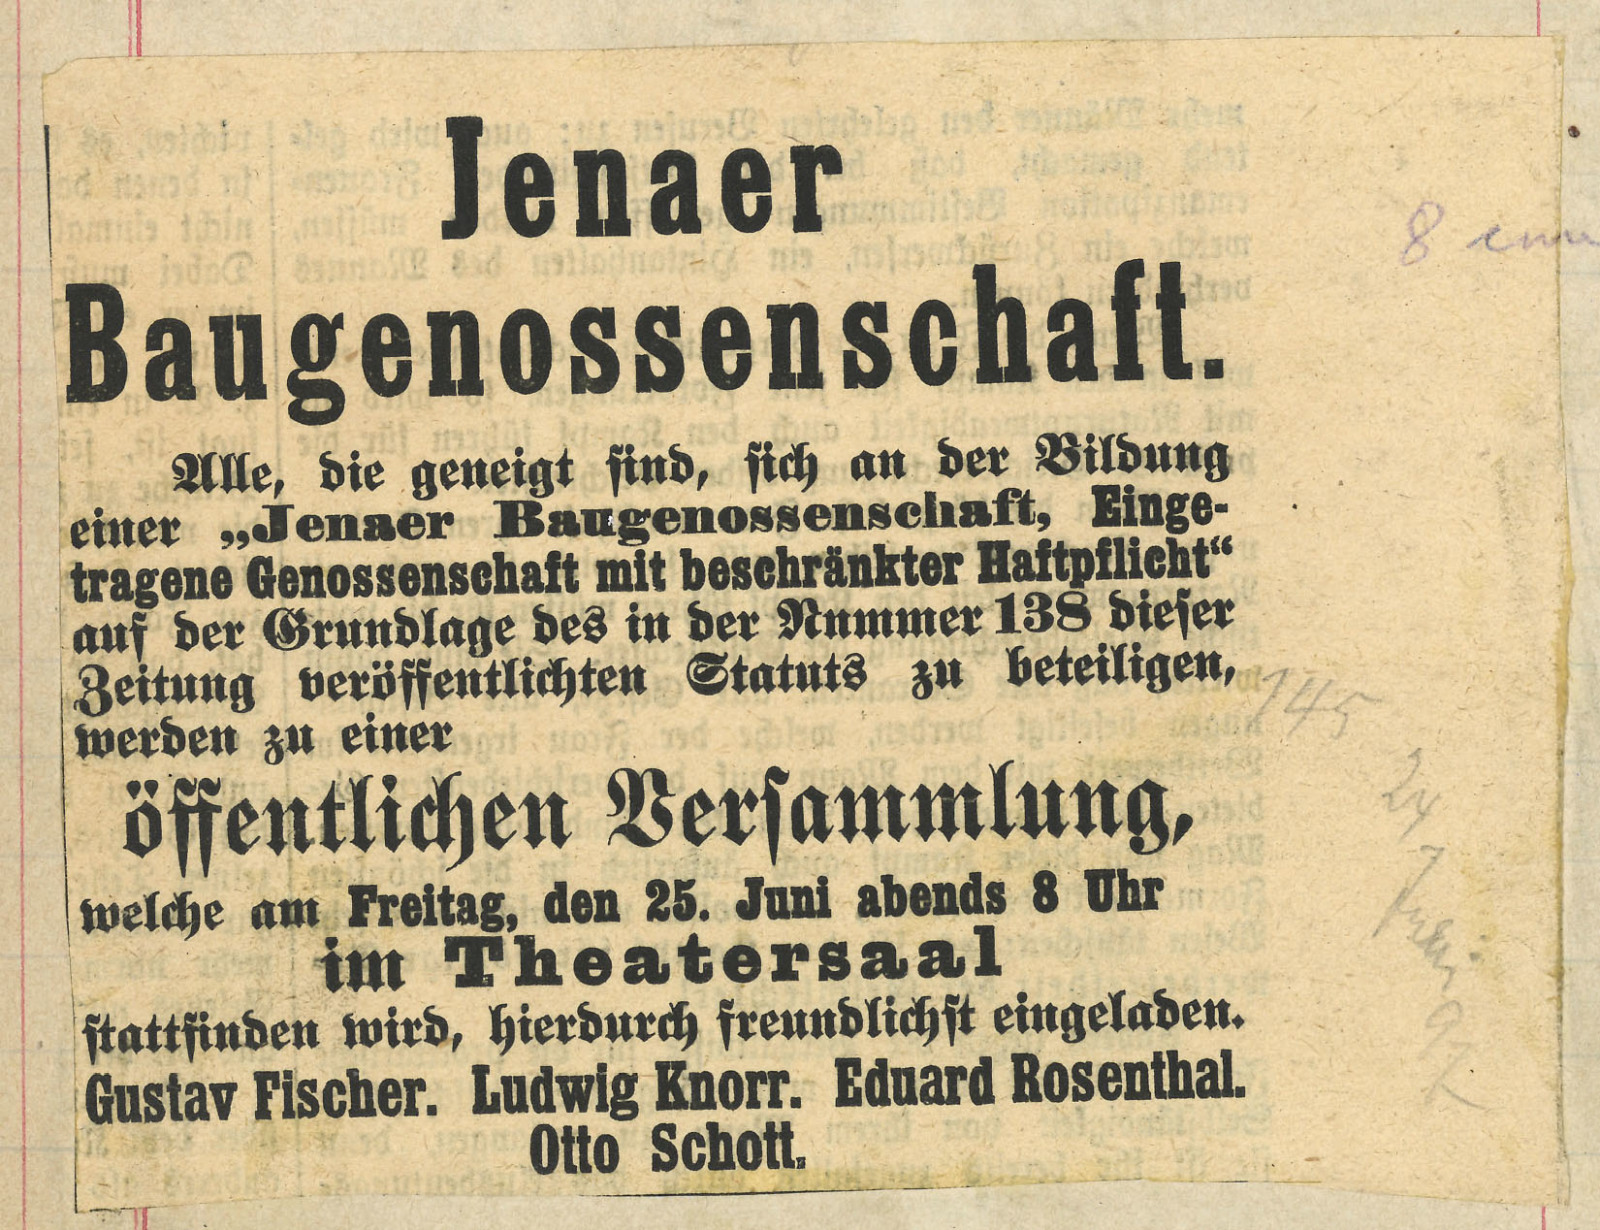 Eine Zeitungsanzeige mit dem Aufruf zur Gründungssitzung der Baugenossenschaft am 24. Juni 1897 in den Theatersaal zu kommen.